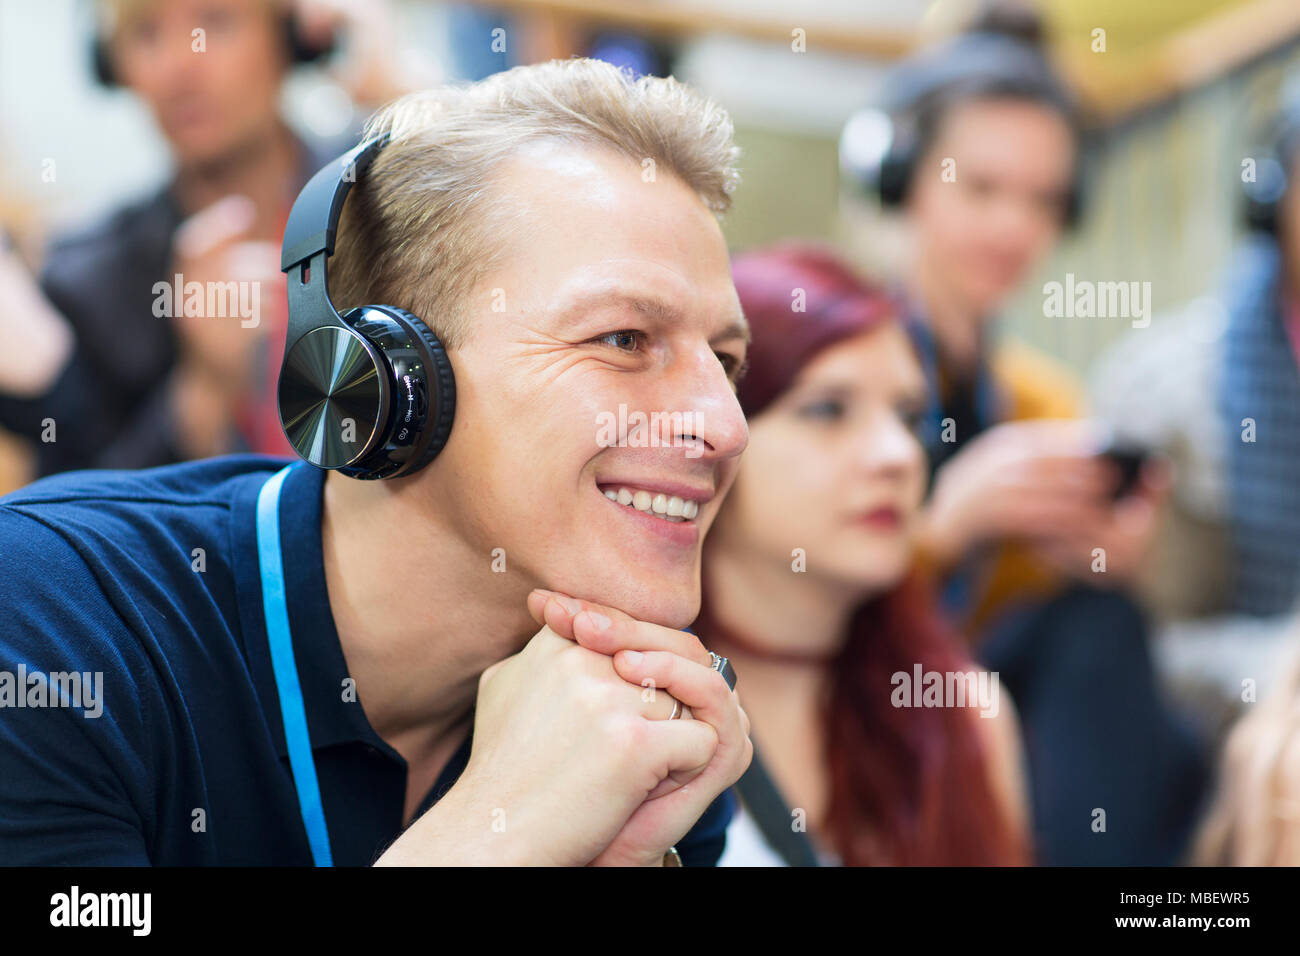 Lächelnd Geschäftsmann mit Kopfhörern in der Konferenz Publikum Stockfoto